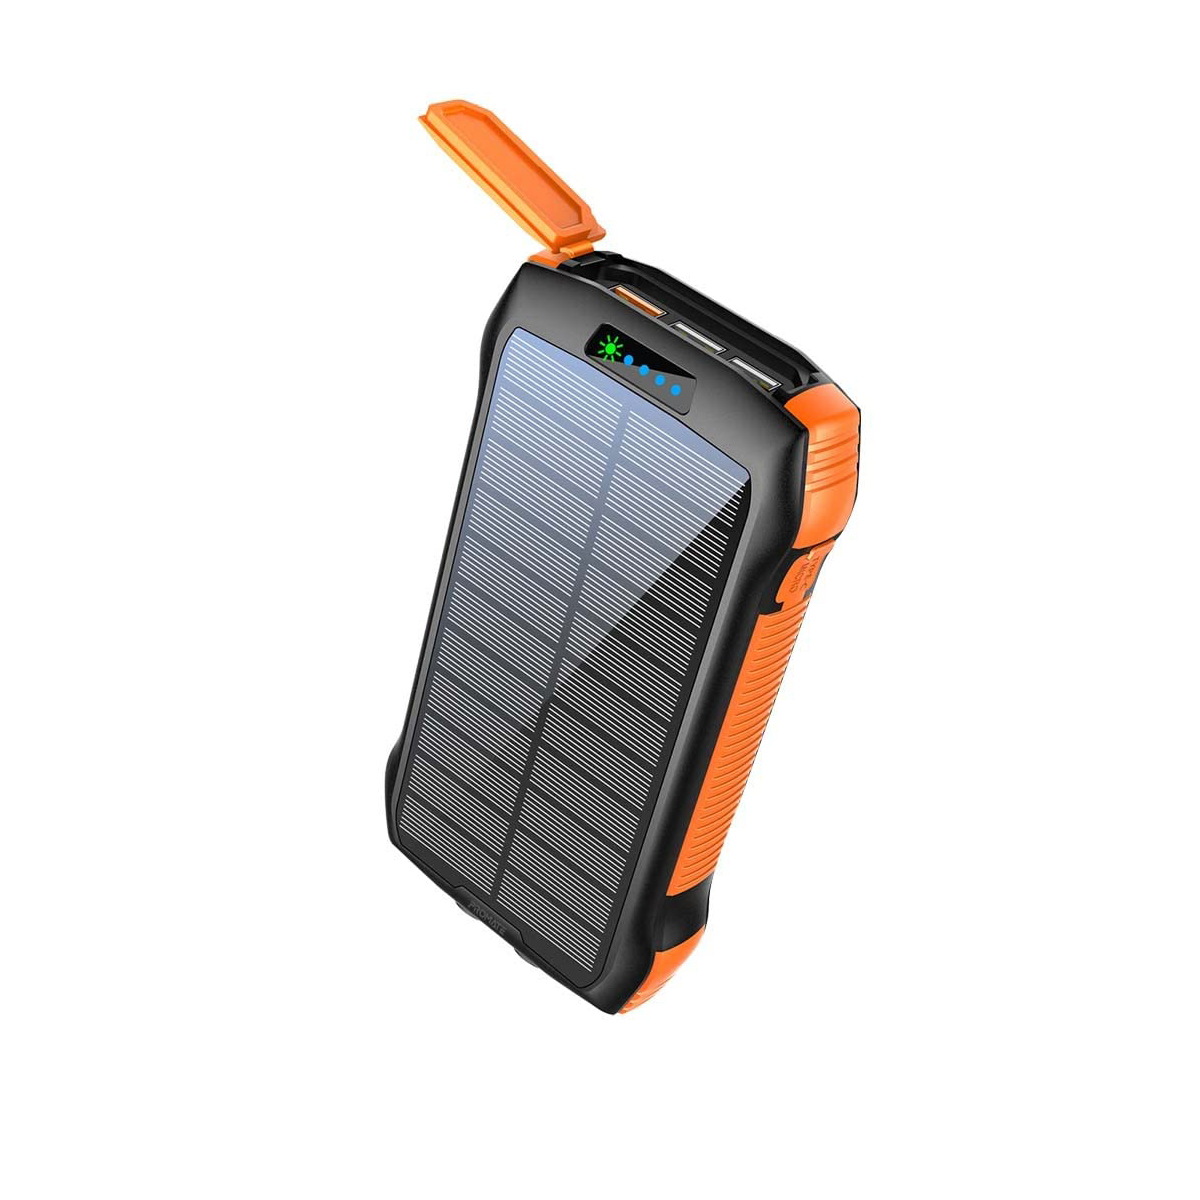 نکته خرید - قیمت روز پاوربانک خورشیدی پرومیت مدل SOLARTANK-20PDQI به ظرفیت 20000 میلی آمپر ساعت خرید